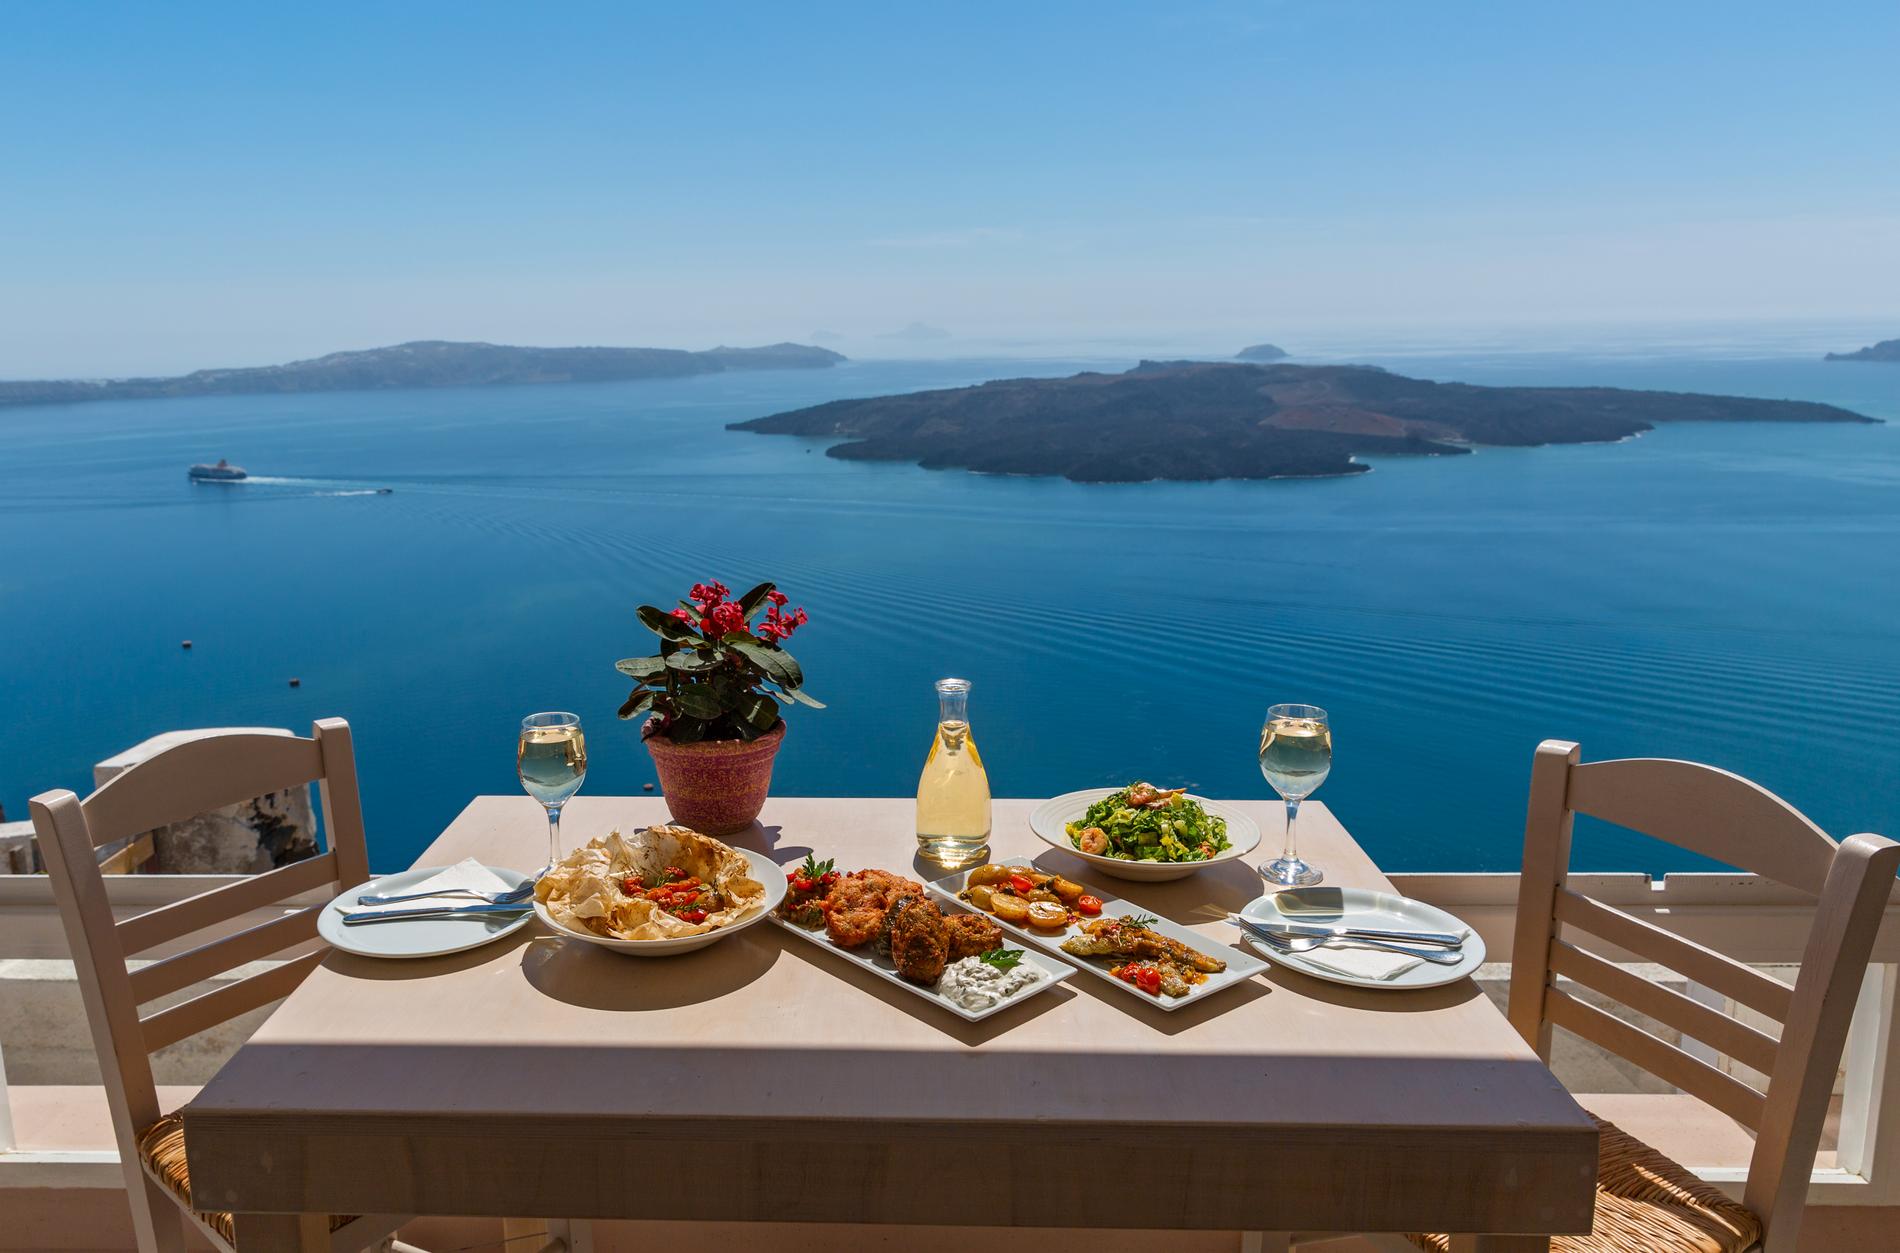  Är maten viktigast under resan så är Grekland billigast. 